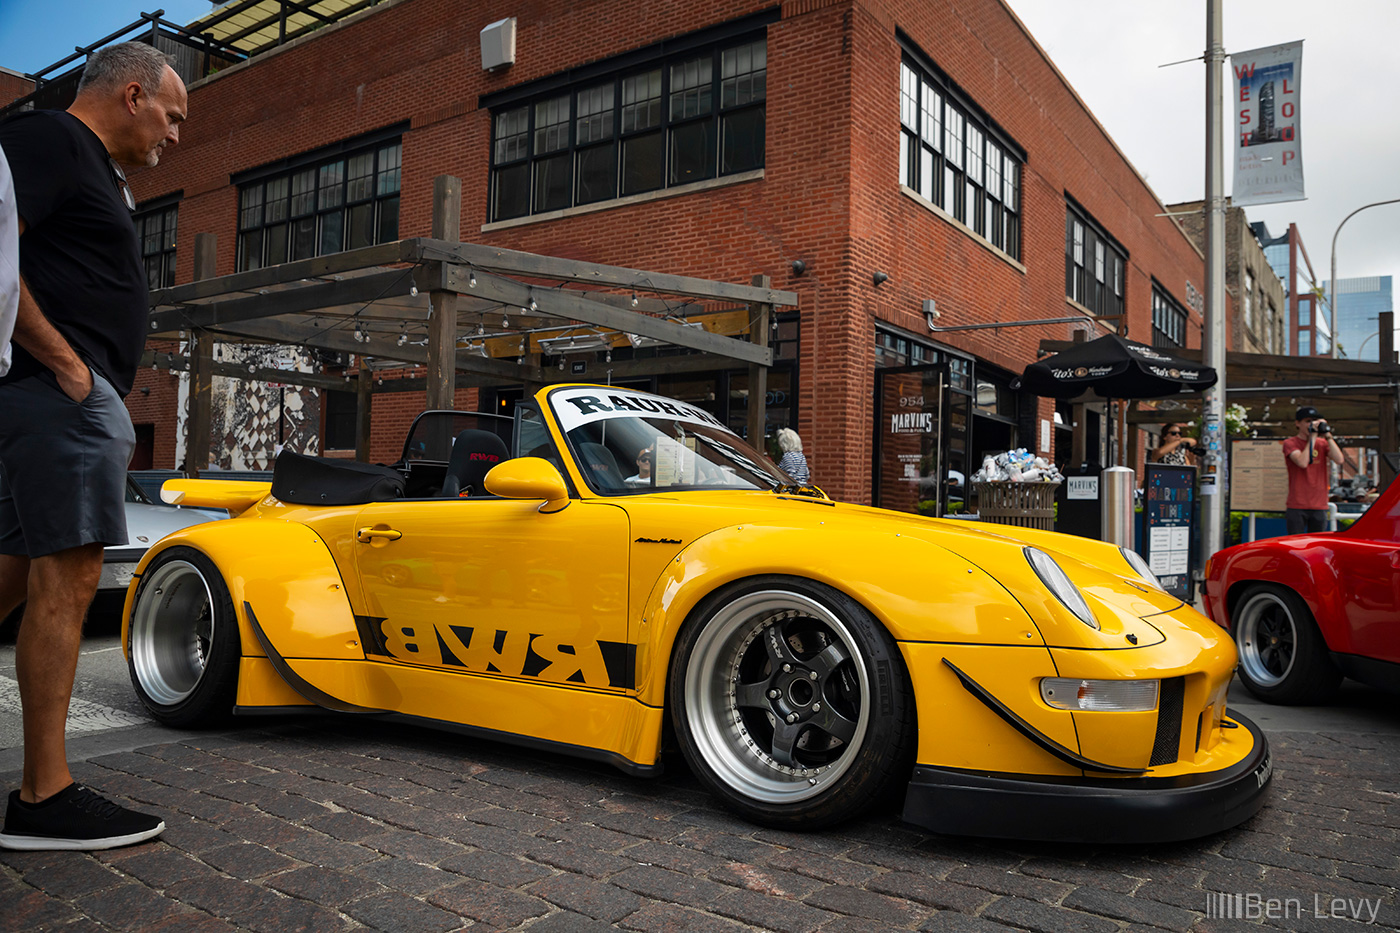 Yellow RAUH-Welt Begriff Porsche 993 Cabriolet in Chicago